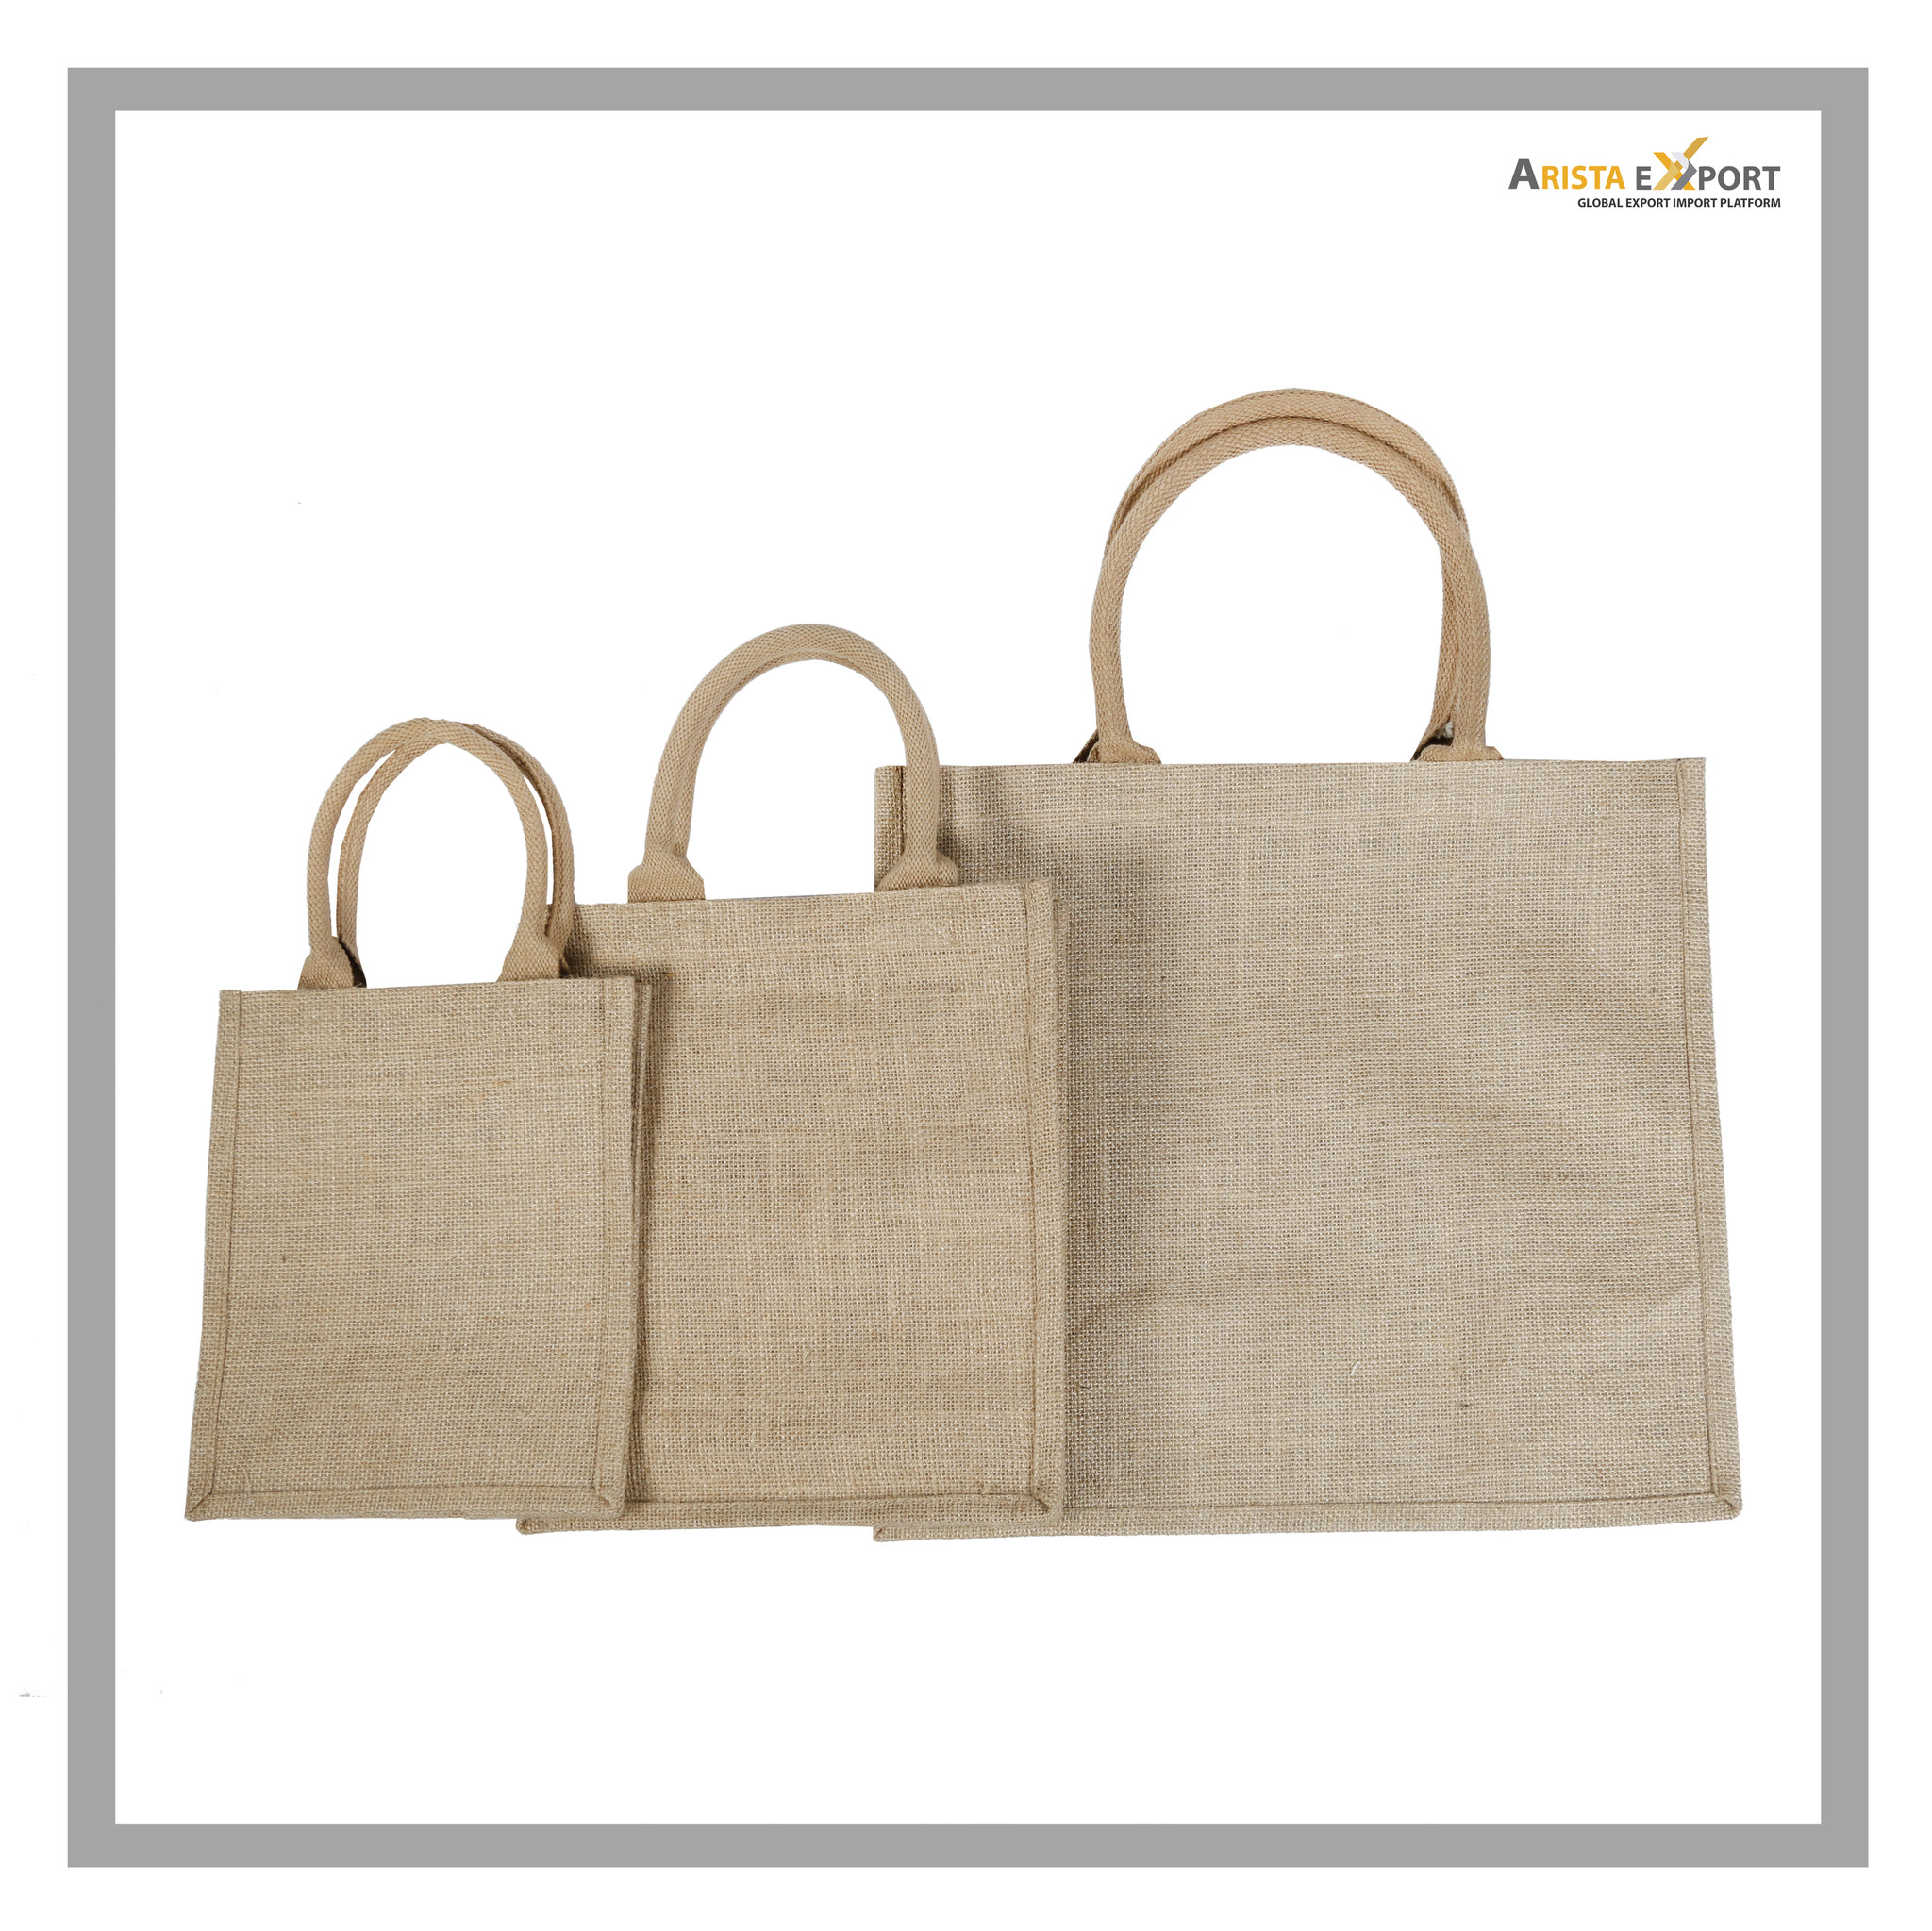 Jute Shopping Bag Material 100% Natural Jute Fabric